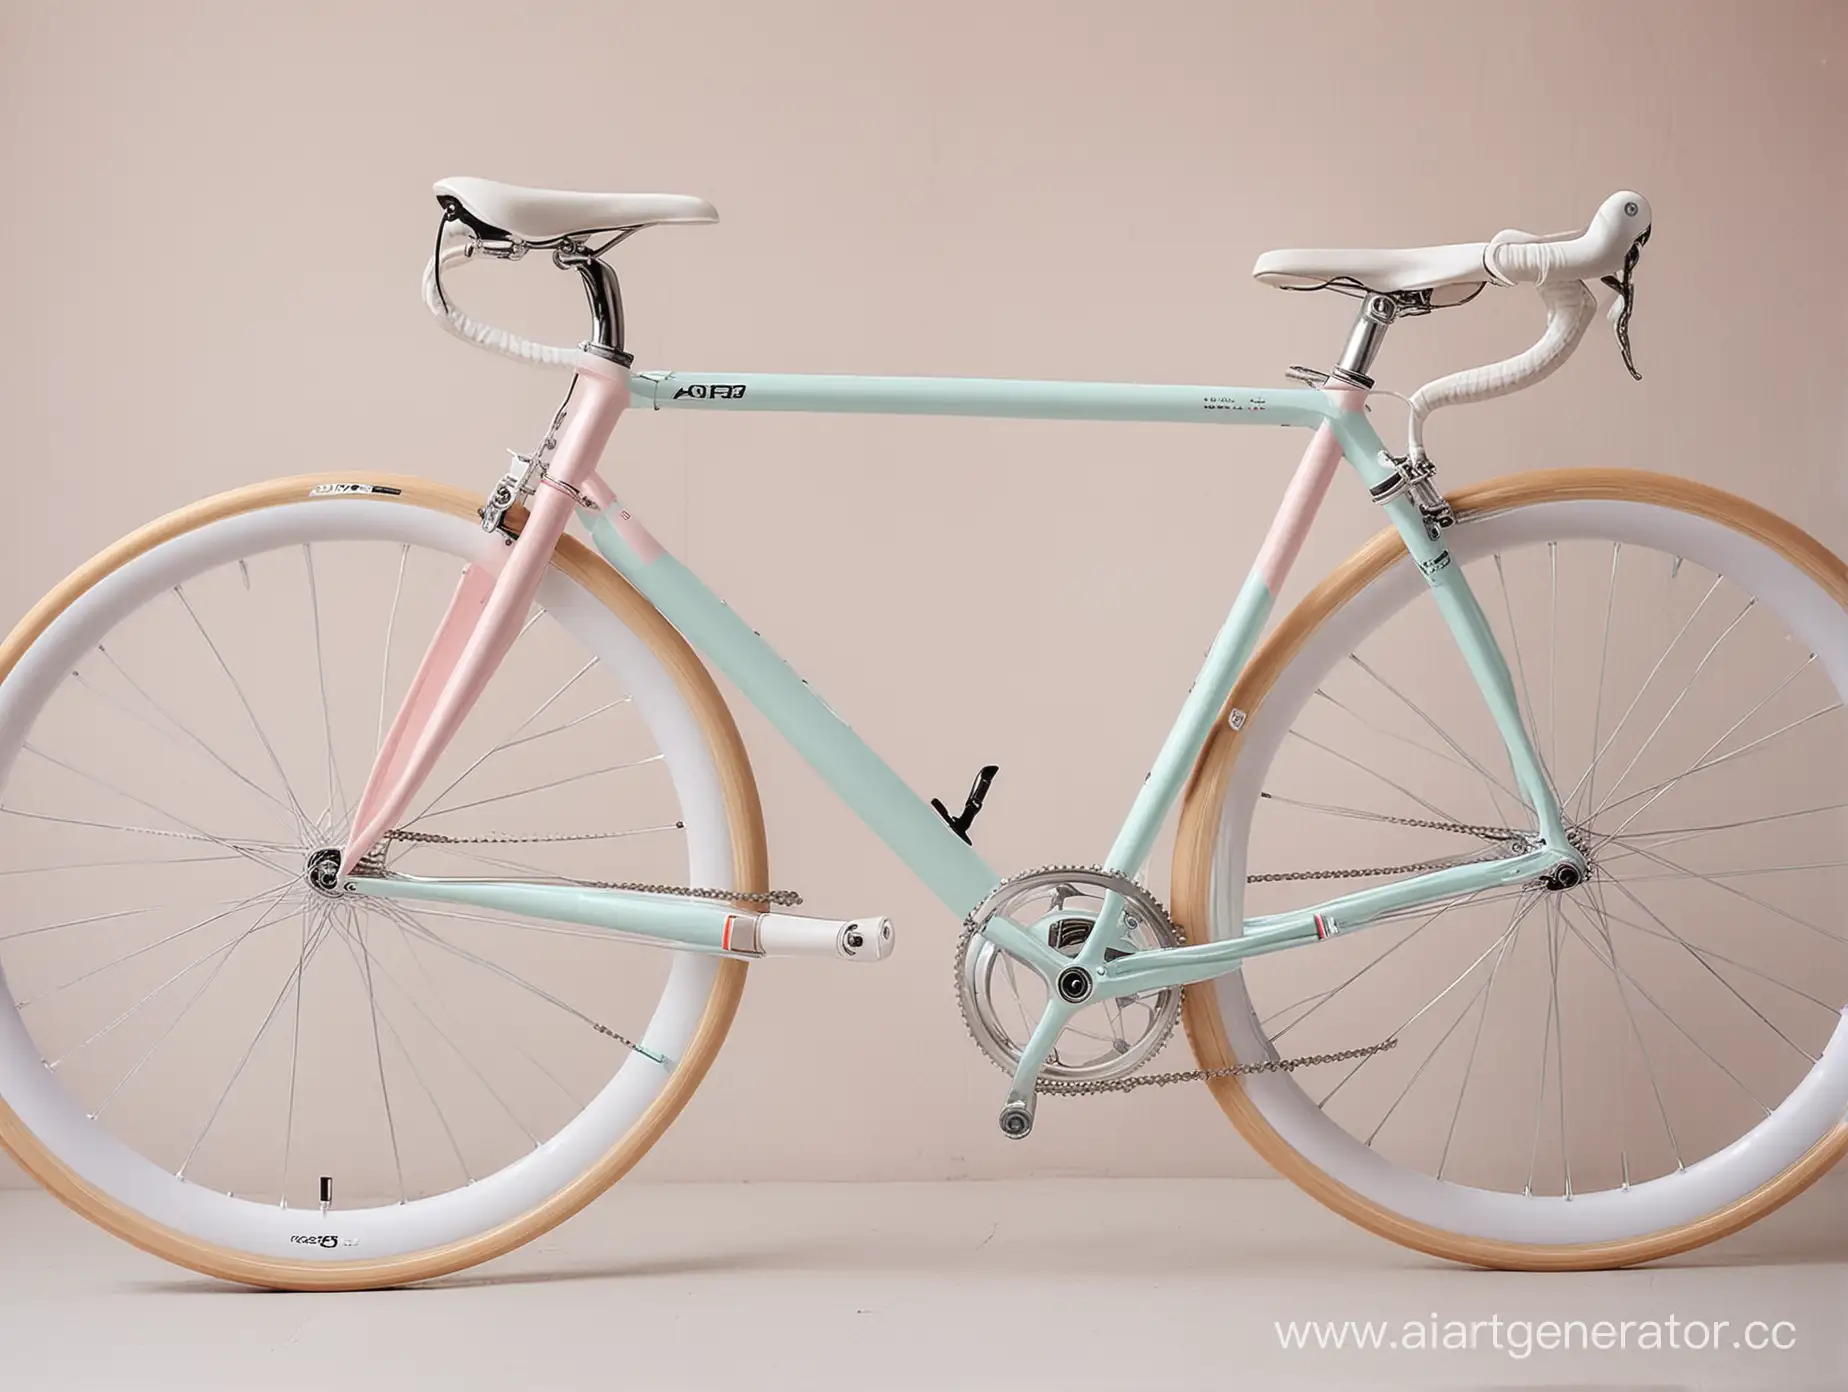 шоссейного велосипеда aero, в пастельных цветах, цветов три